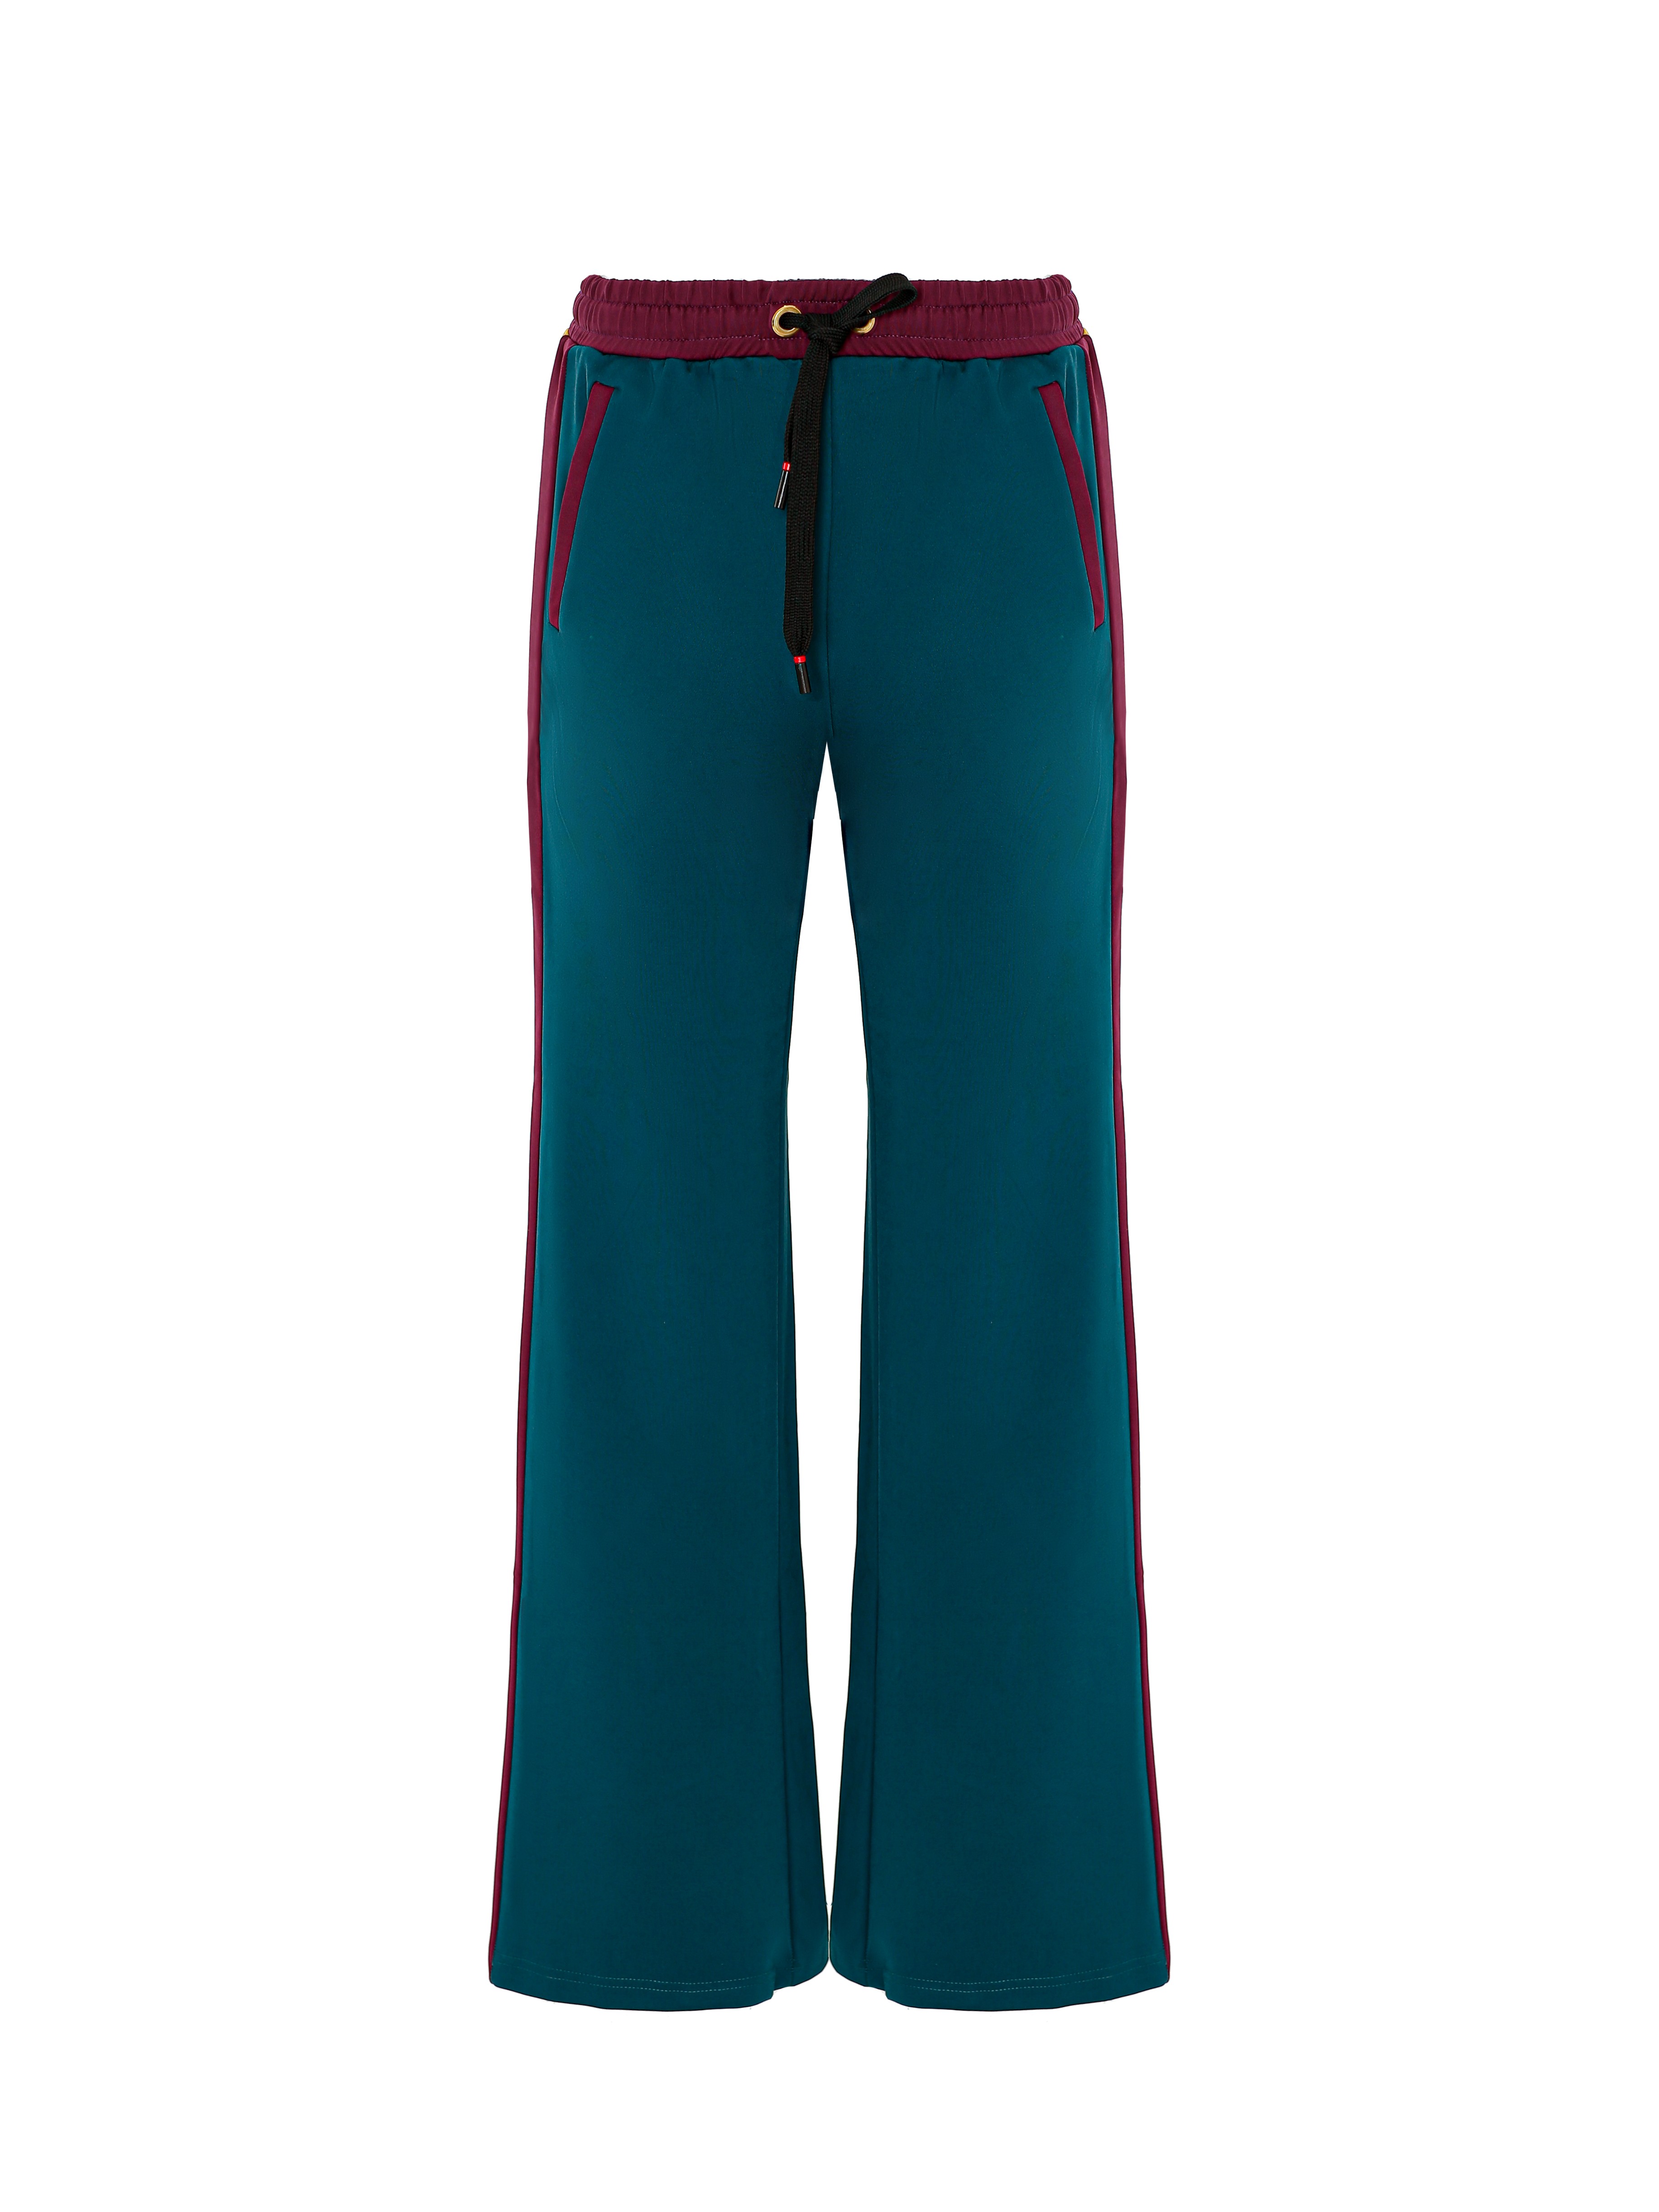 Pants basic turquoise